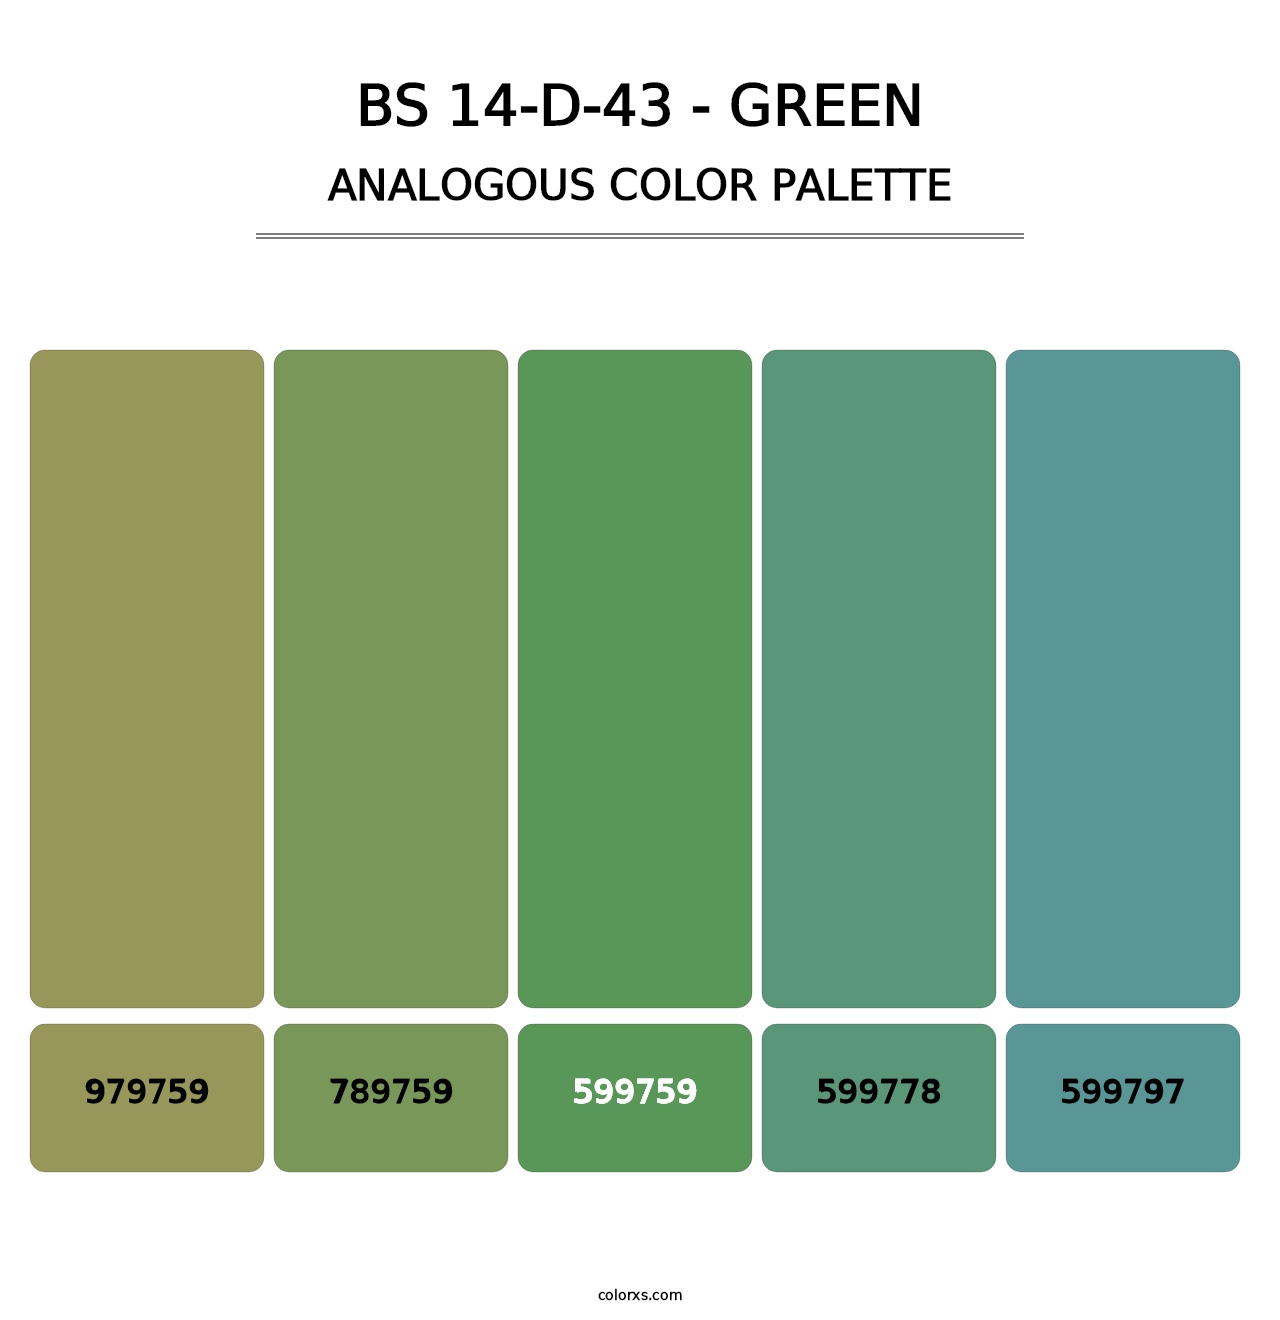 BS 14-D-43 - Green - Analogous Color Palette